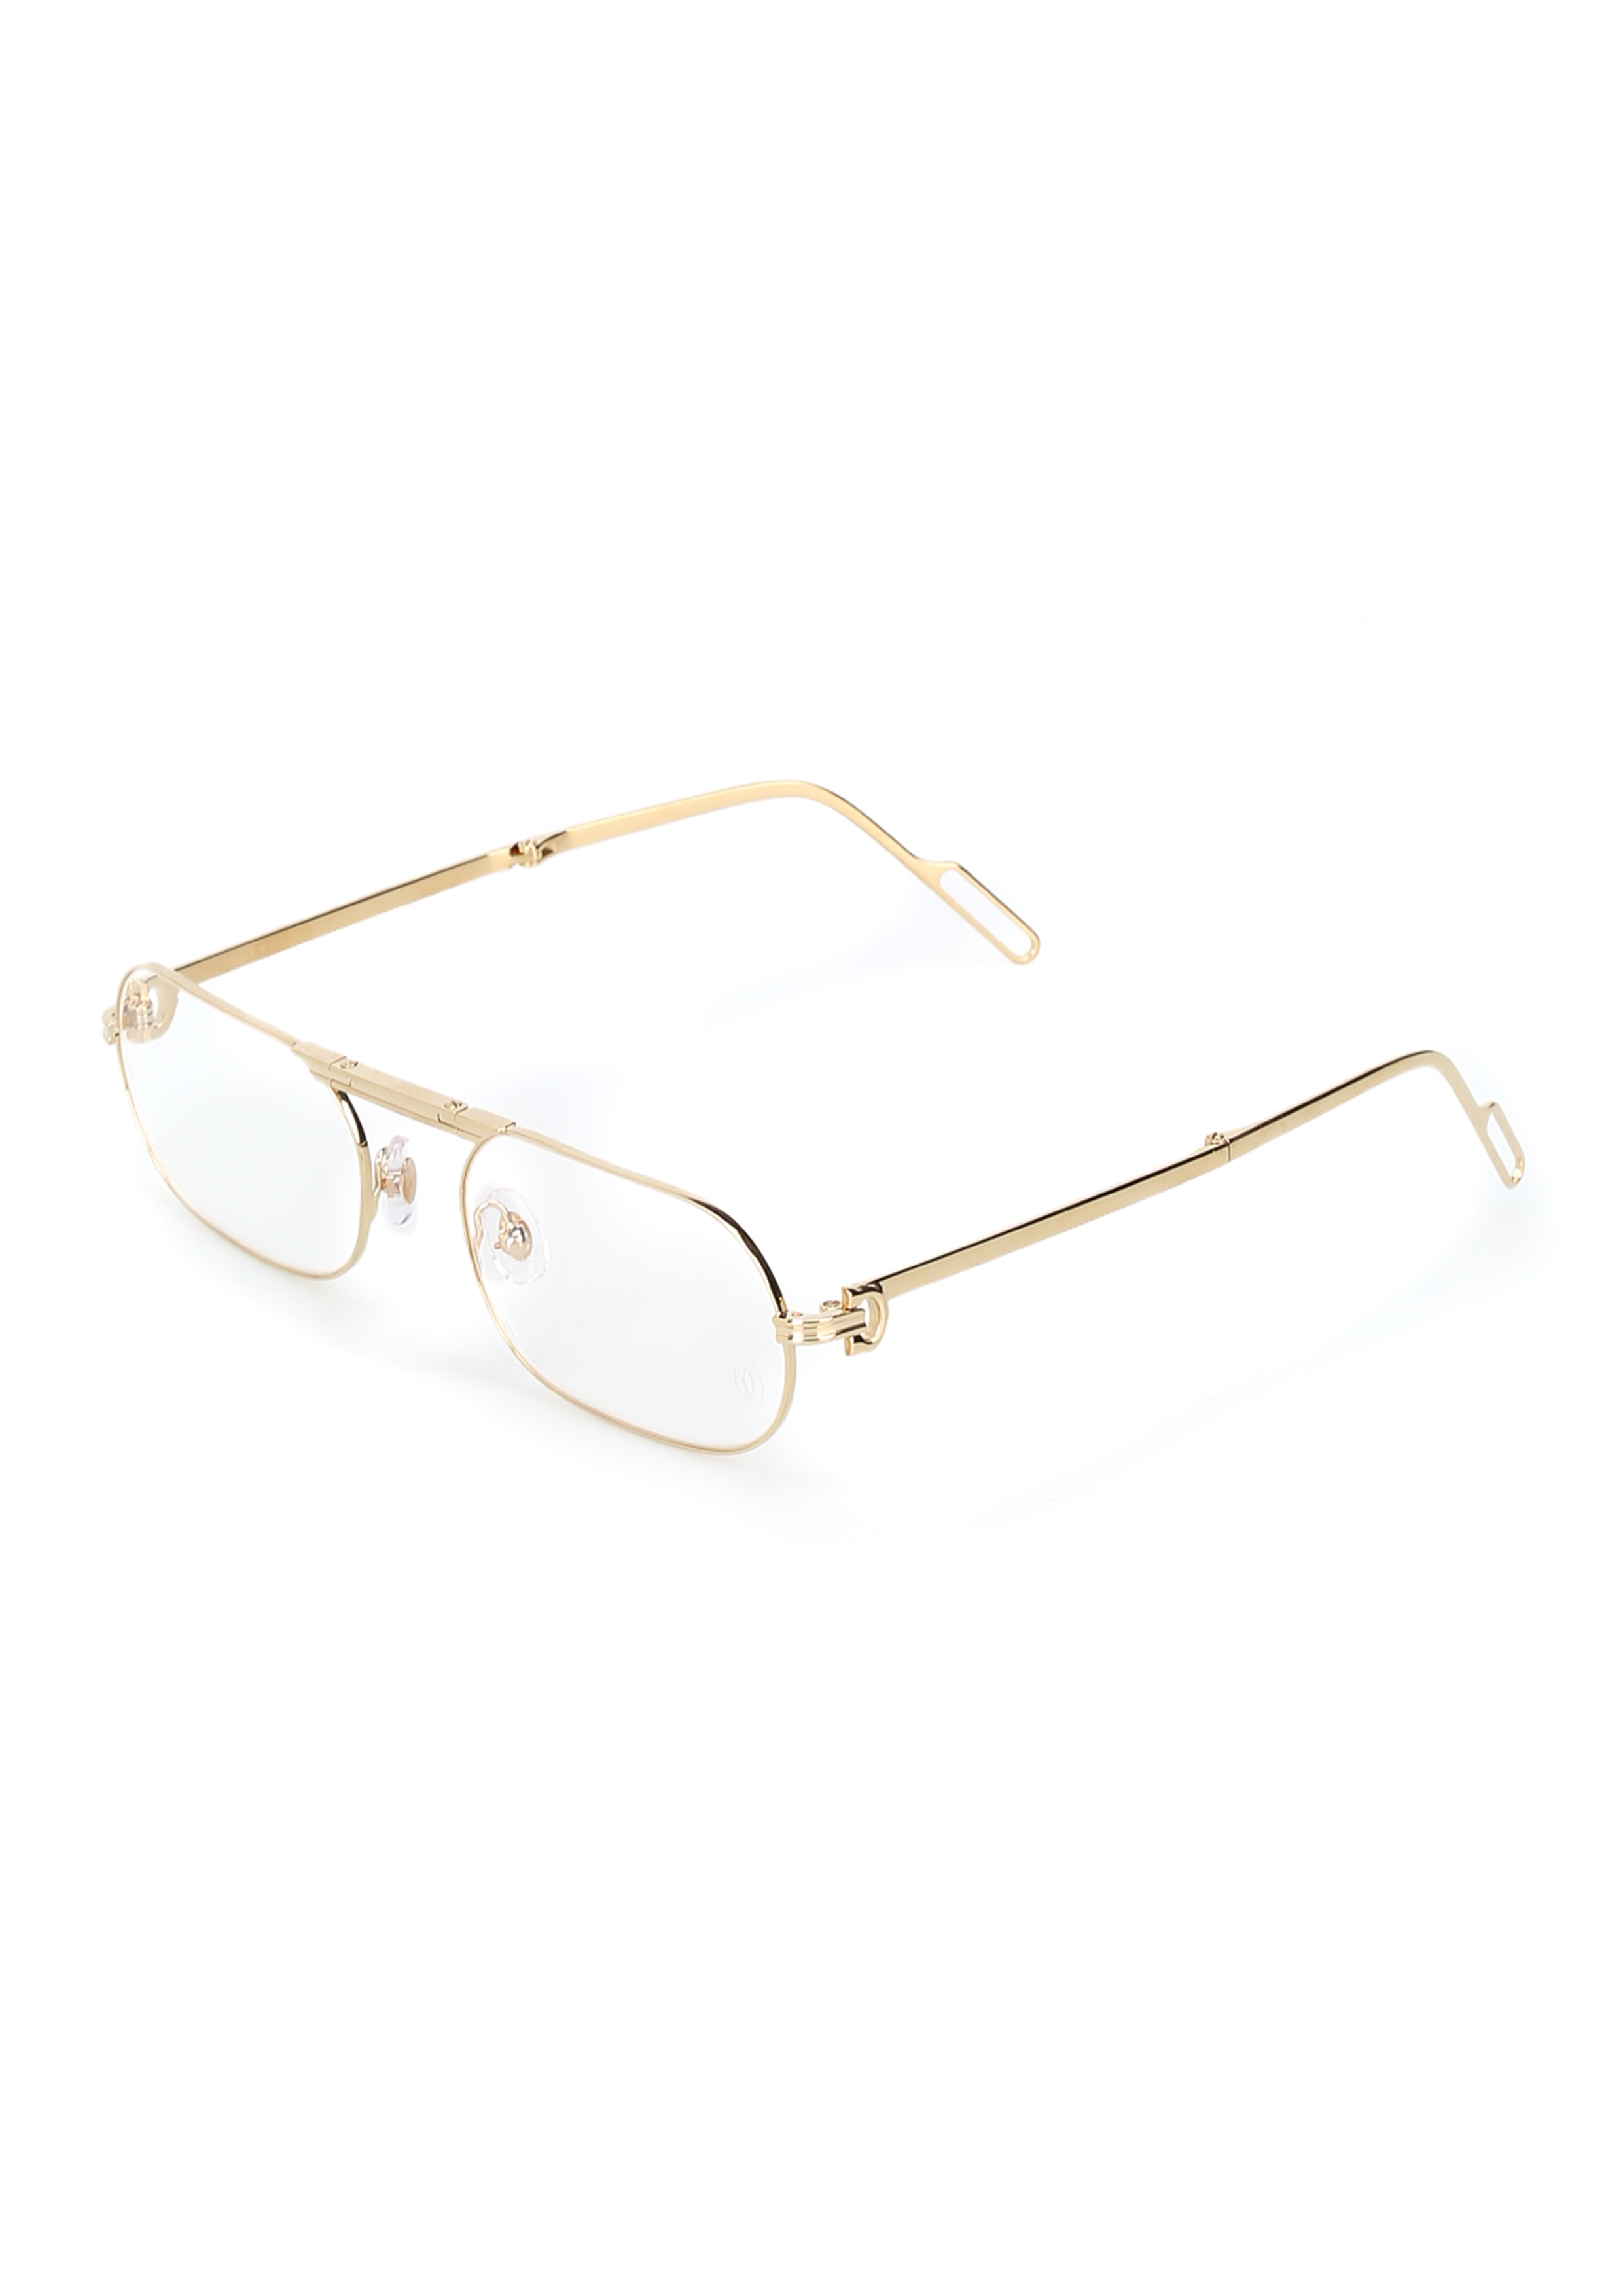 new cartier eyeglass frames